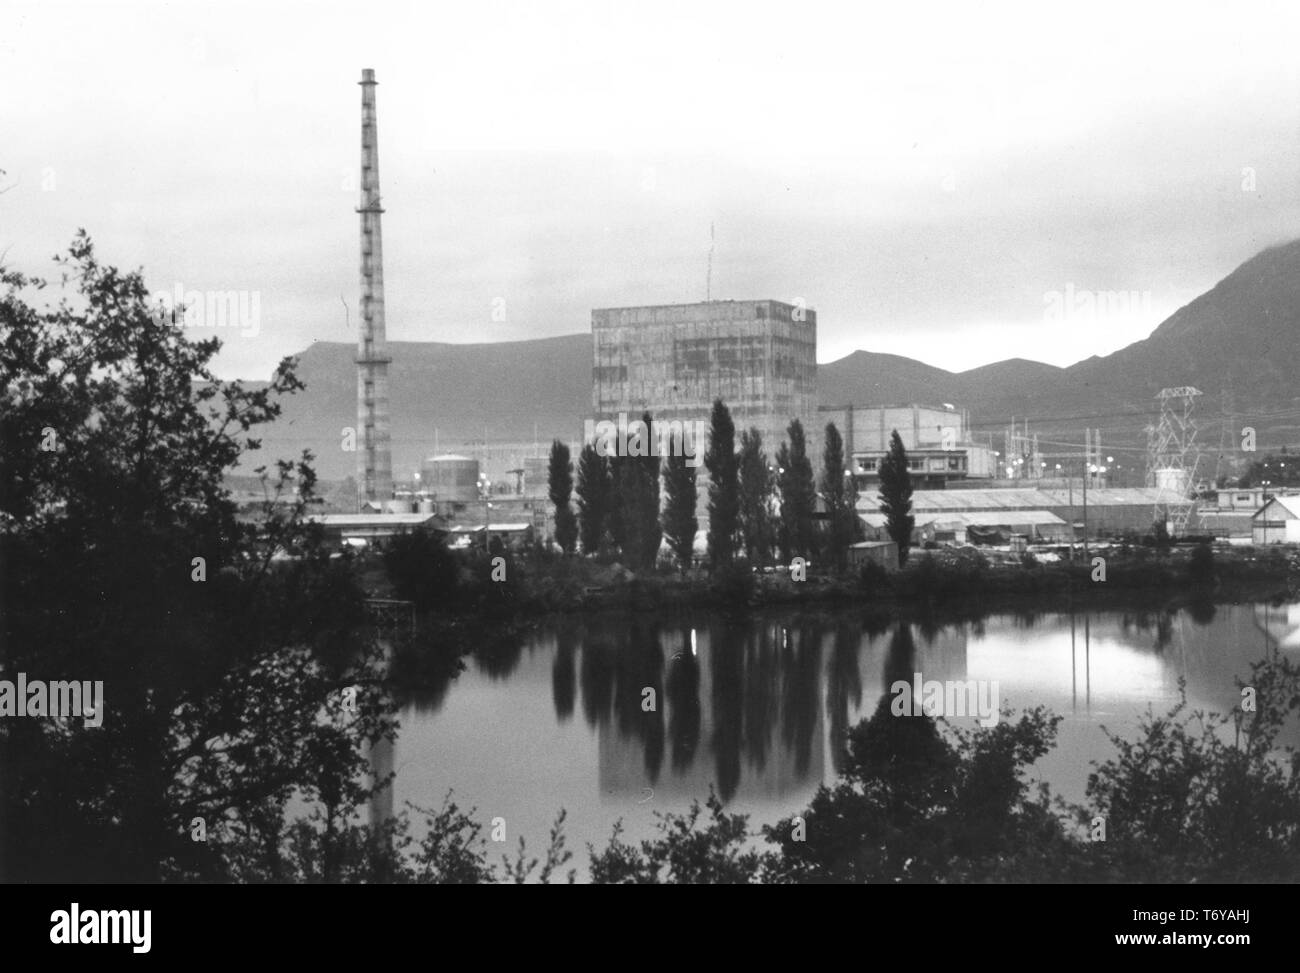 Verdeckt Blick auf Santa Maria de Garona Kernkraftwerk, mit dem Ebro Fluss im Vordergrund, Burgos, Spanien, 1971. Mit freundlicher Genehmigung des US-Ministeriums für Energie. () Stockfoto